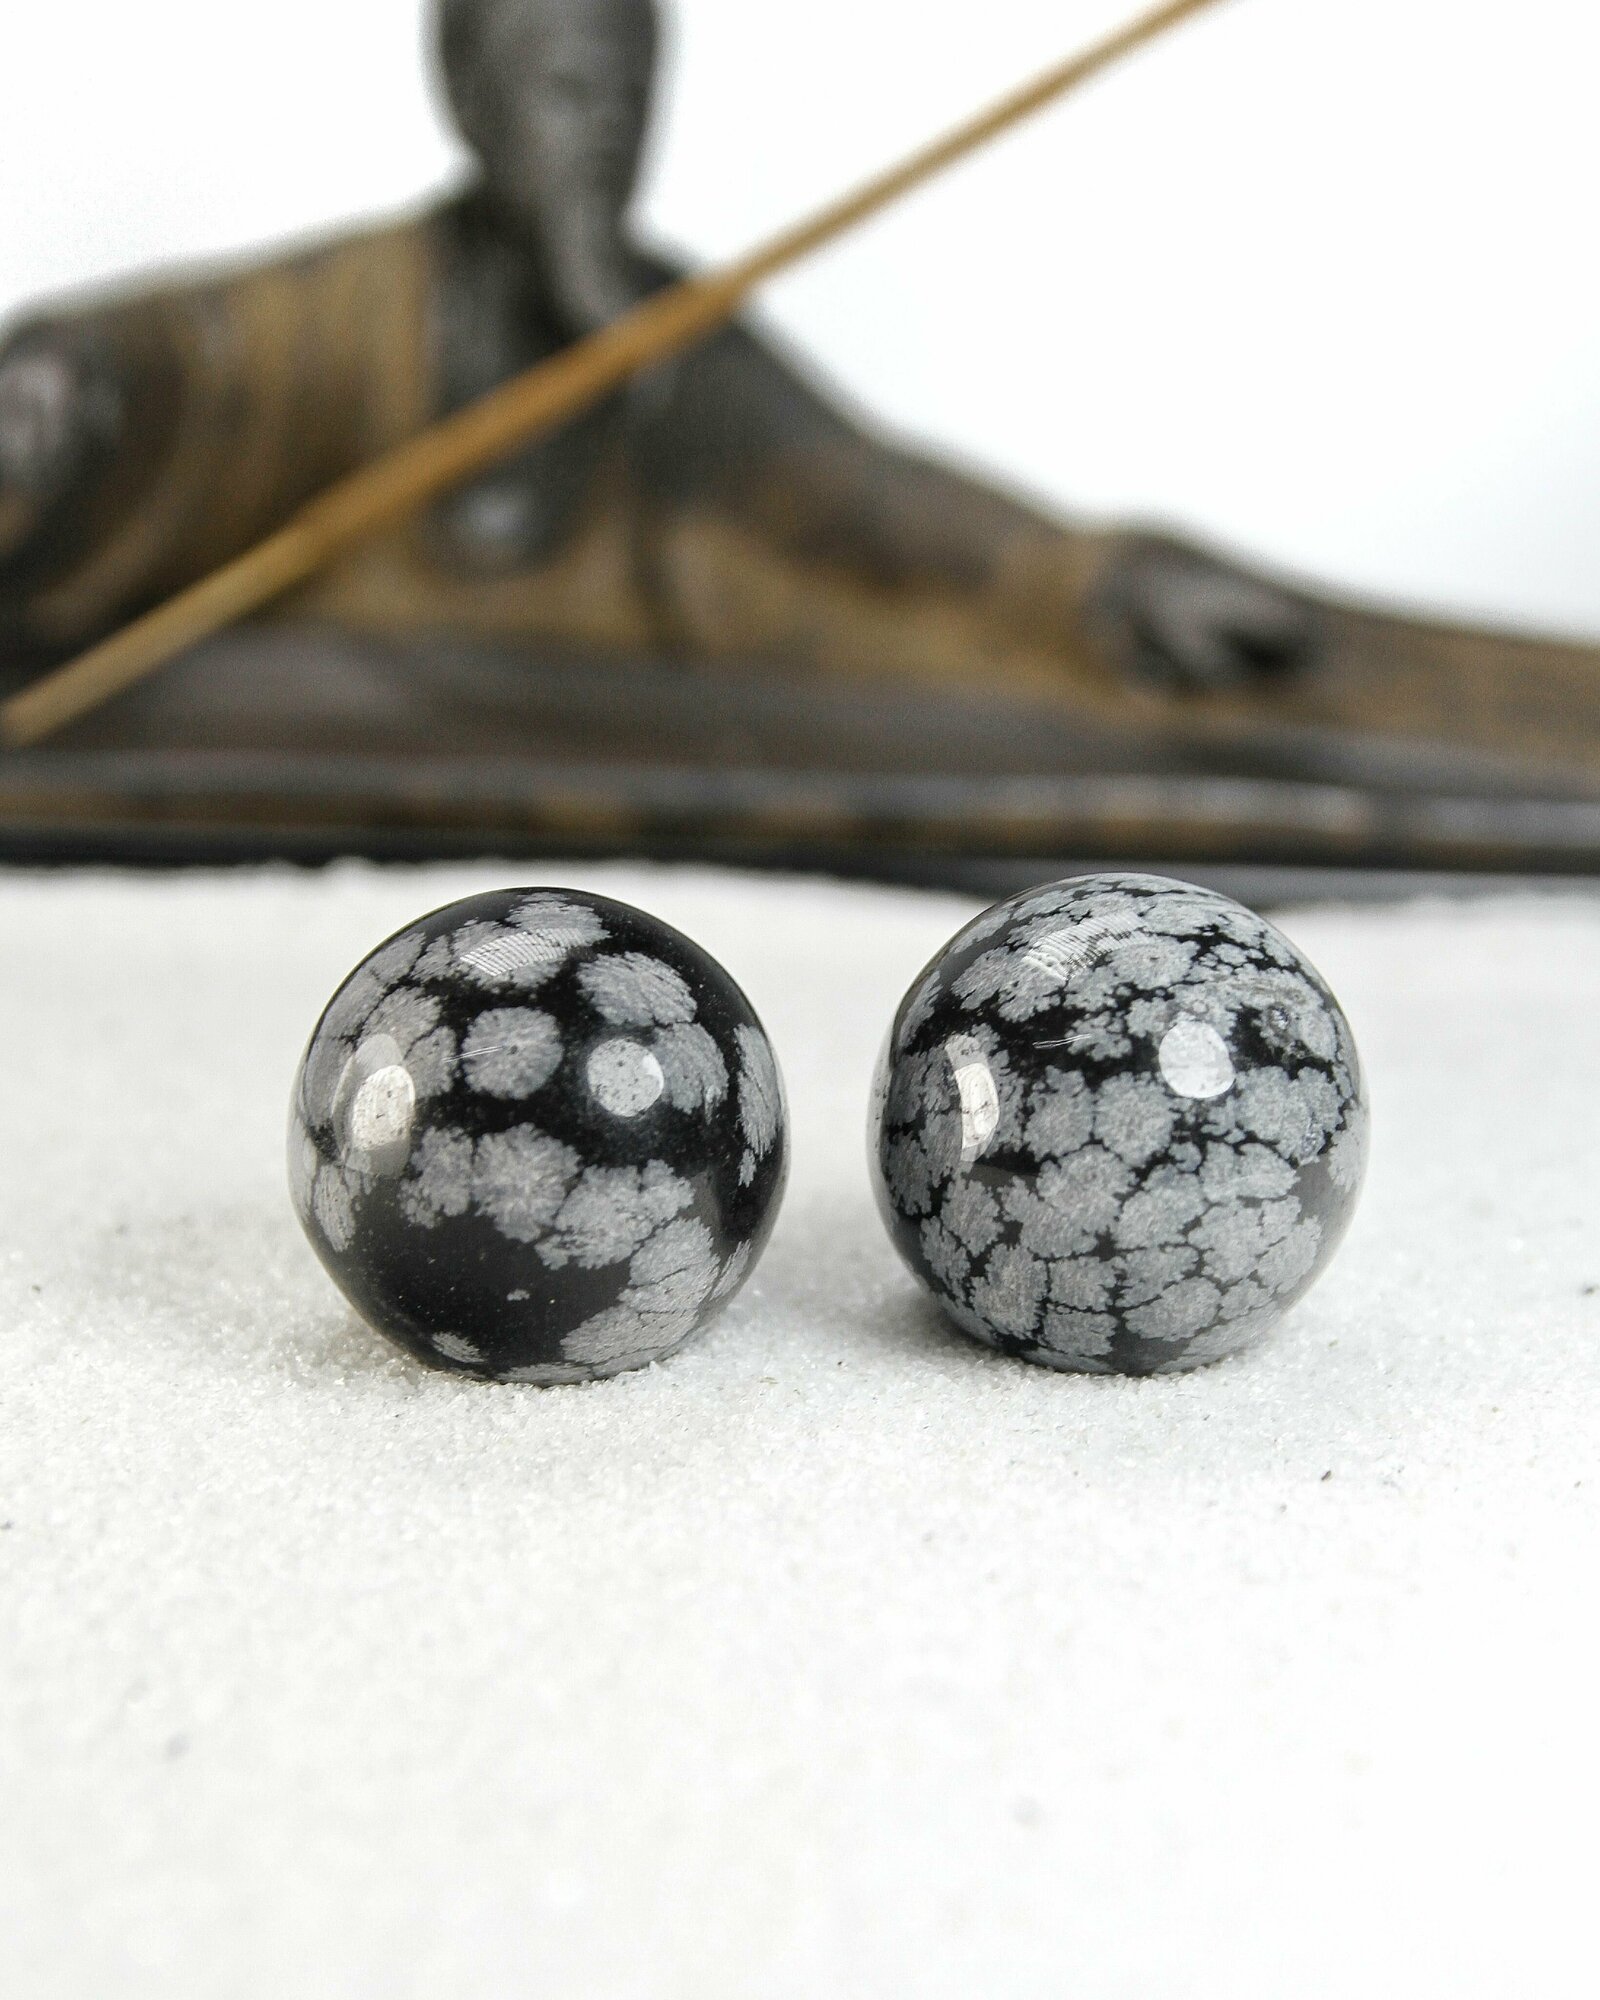 Массажные шары Баодинг Снежный обсидиан - диаметр 29-30 мм, натуральный камень, 2 шт - для стоунтерапии, здоровья и антистресса